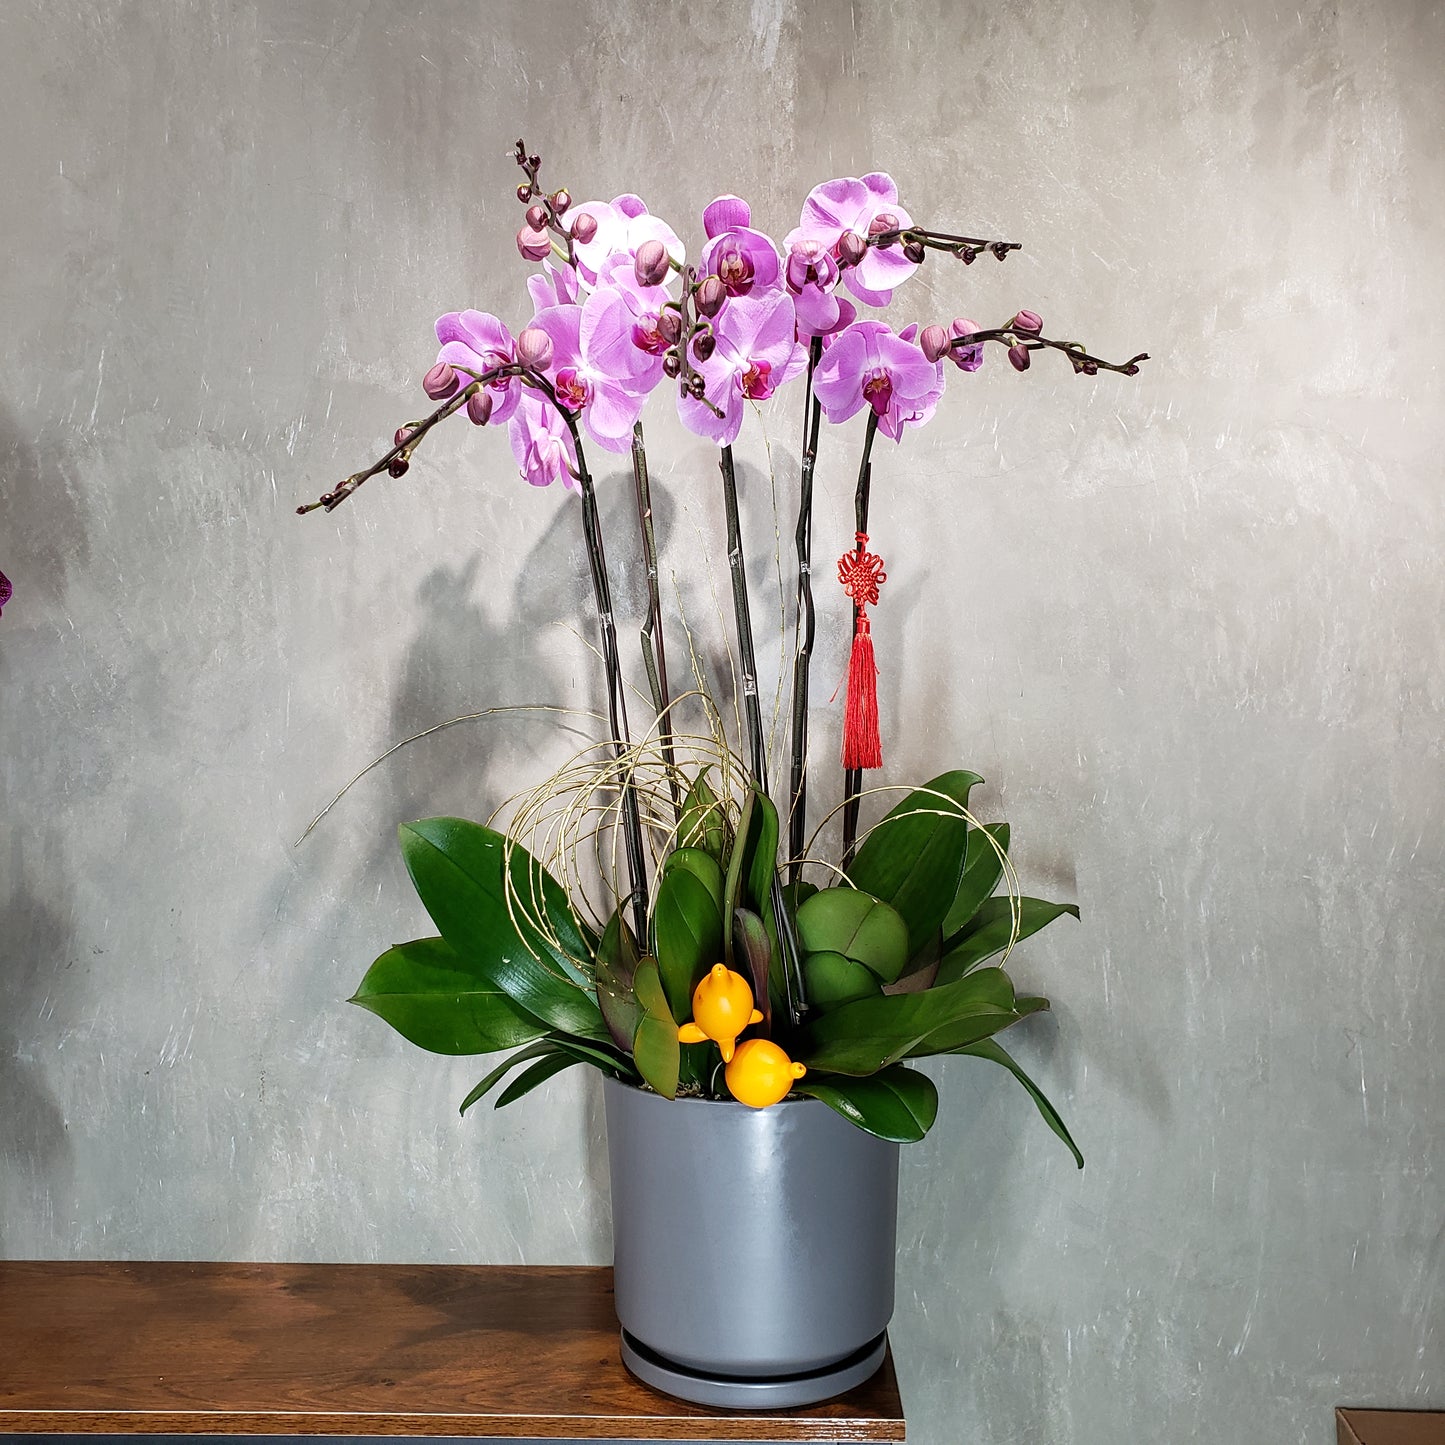 CNY005 - 5-Stem Orchid Arrangement